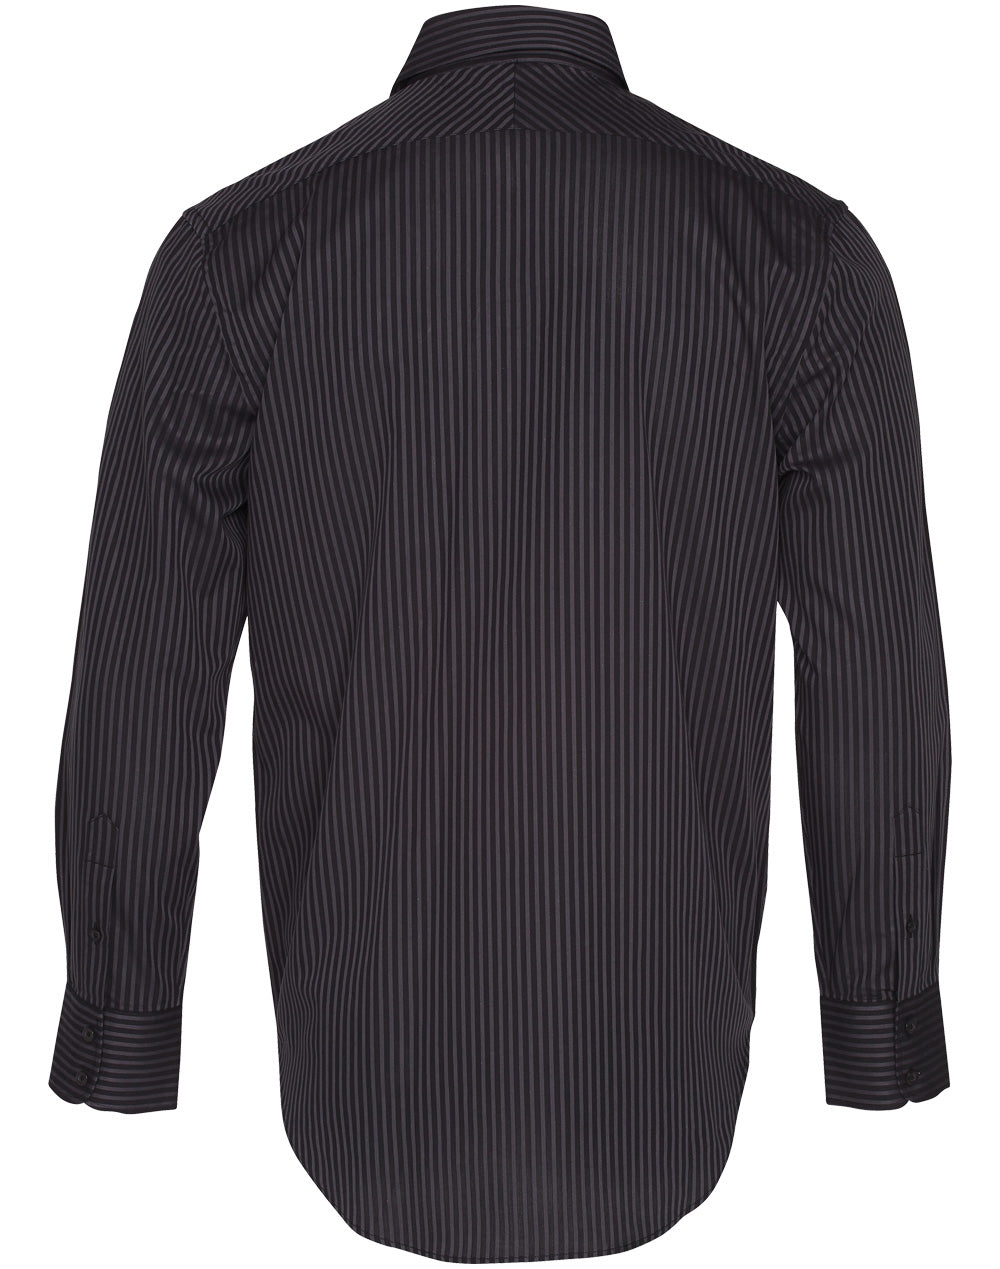 Winning Spirit -Men's Dobby Stripe Long Sleeve Shirt-M7132